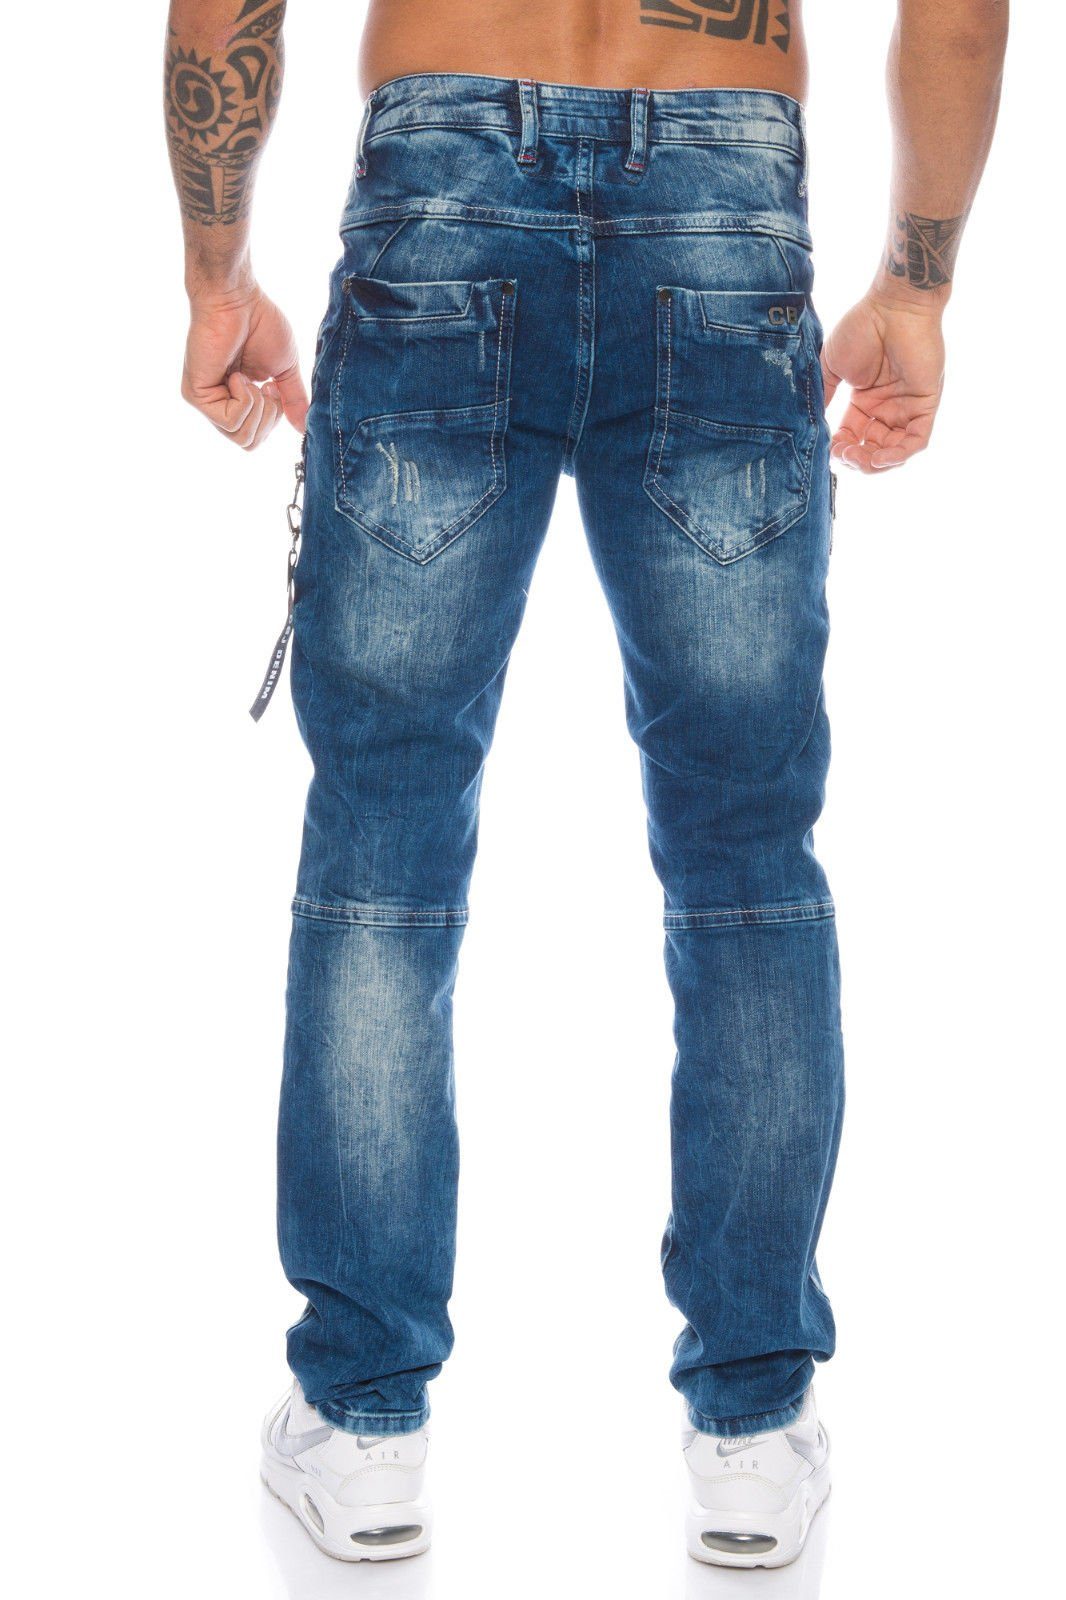 Cipo & mit Reißverschlussapplikationen Herren Jeans destroyed Jeans Baxx destroyed und mit Look Reißverschlussapplikationen Look und Slim-fit-Jeans